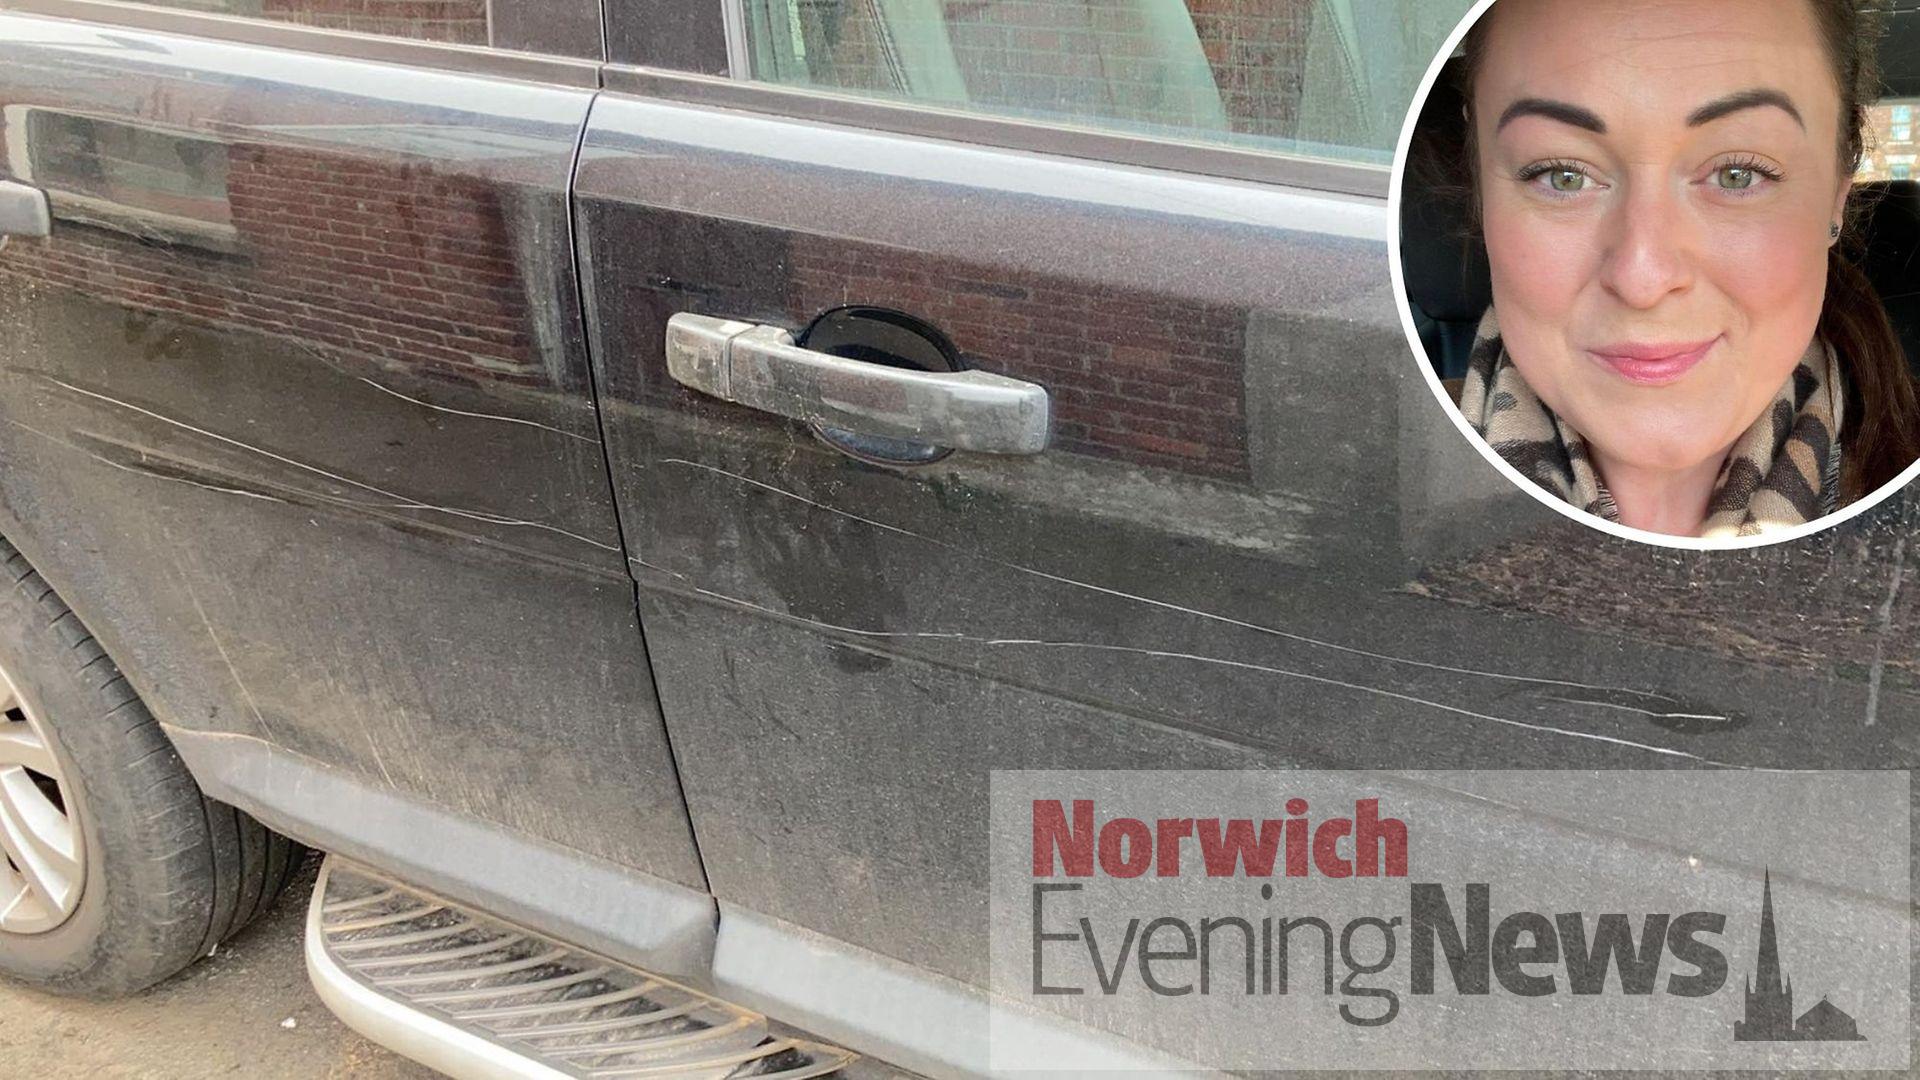 Norwich Crime: NR3 car keying spree
